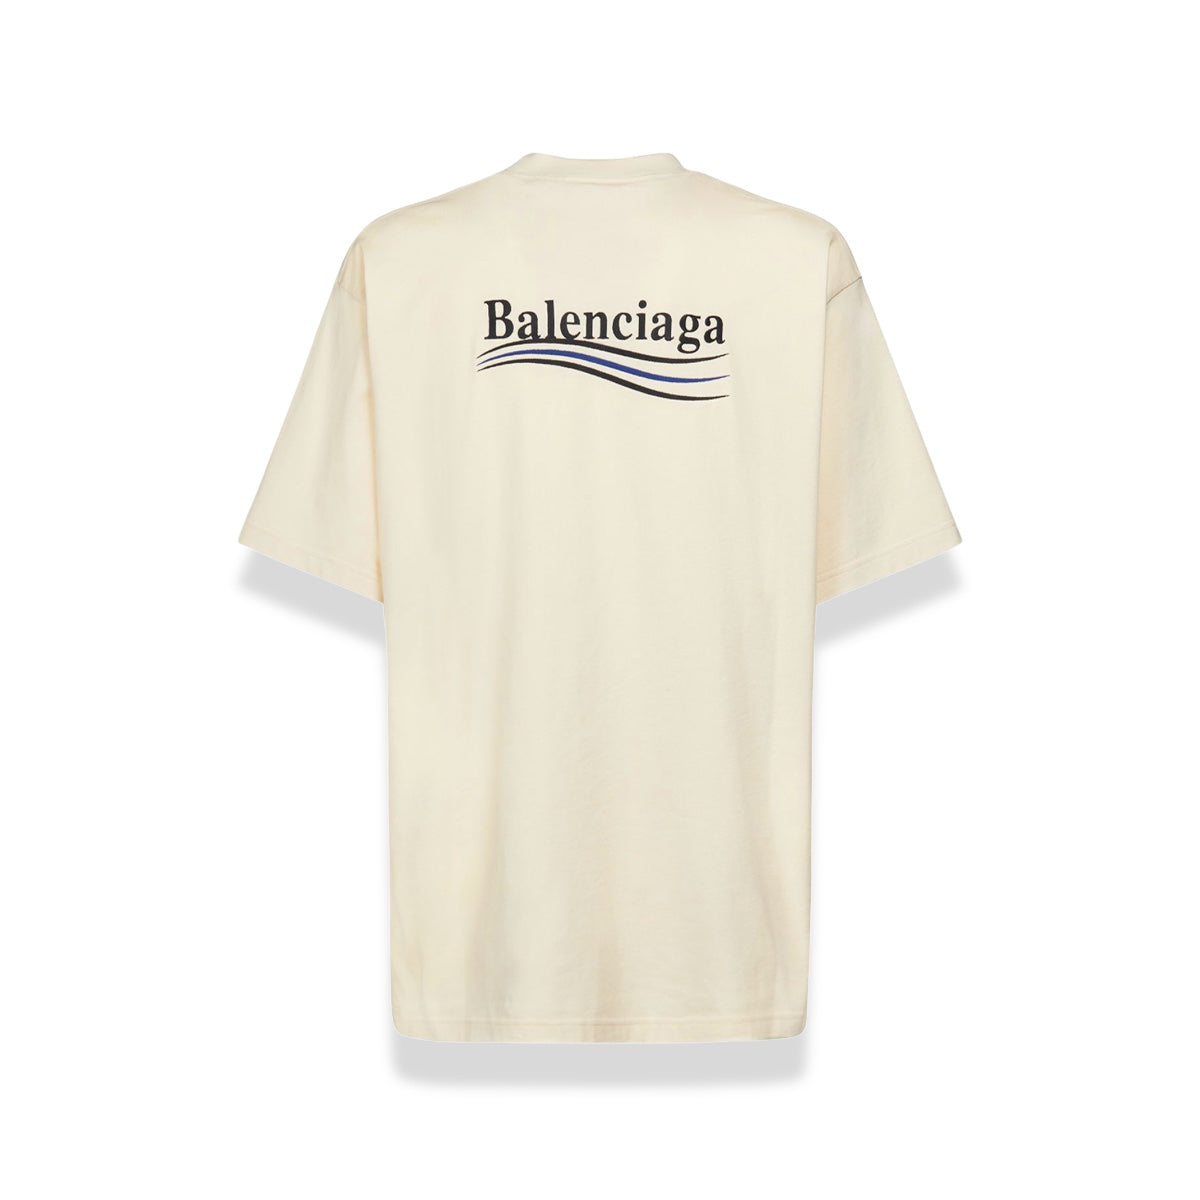 Balenciaga - Political Campaign Oversized Cream Tee